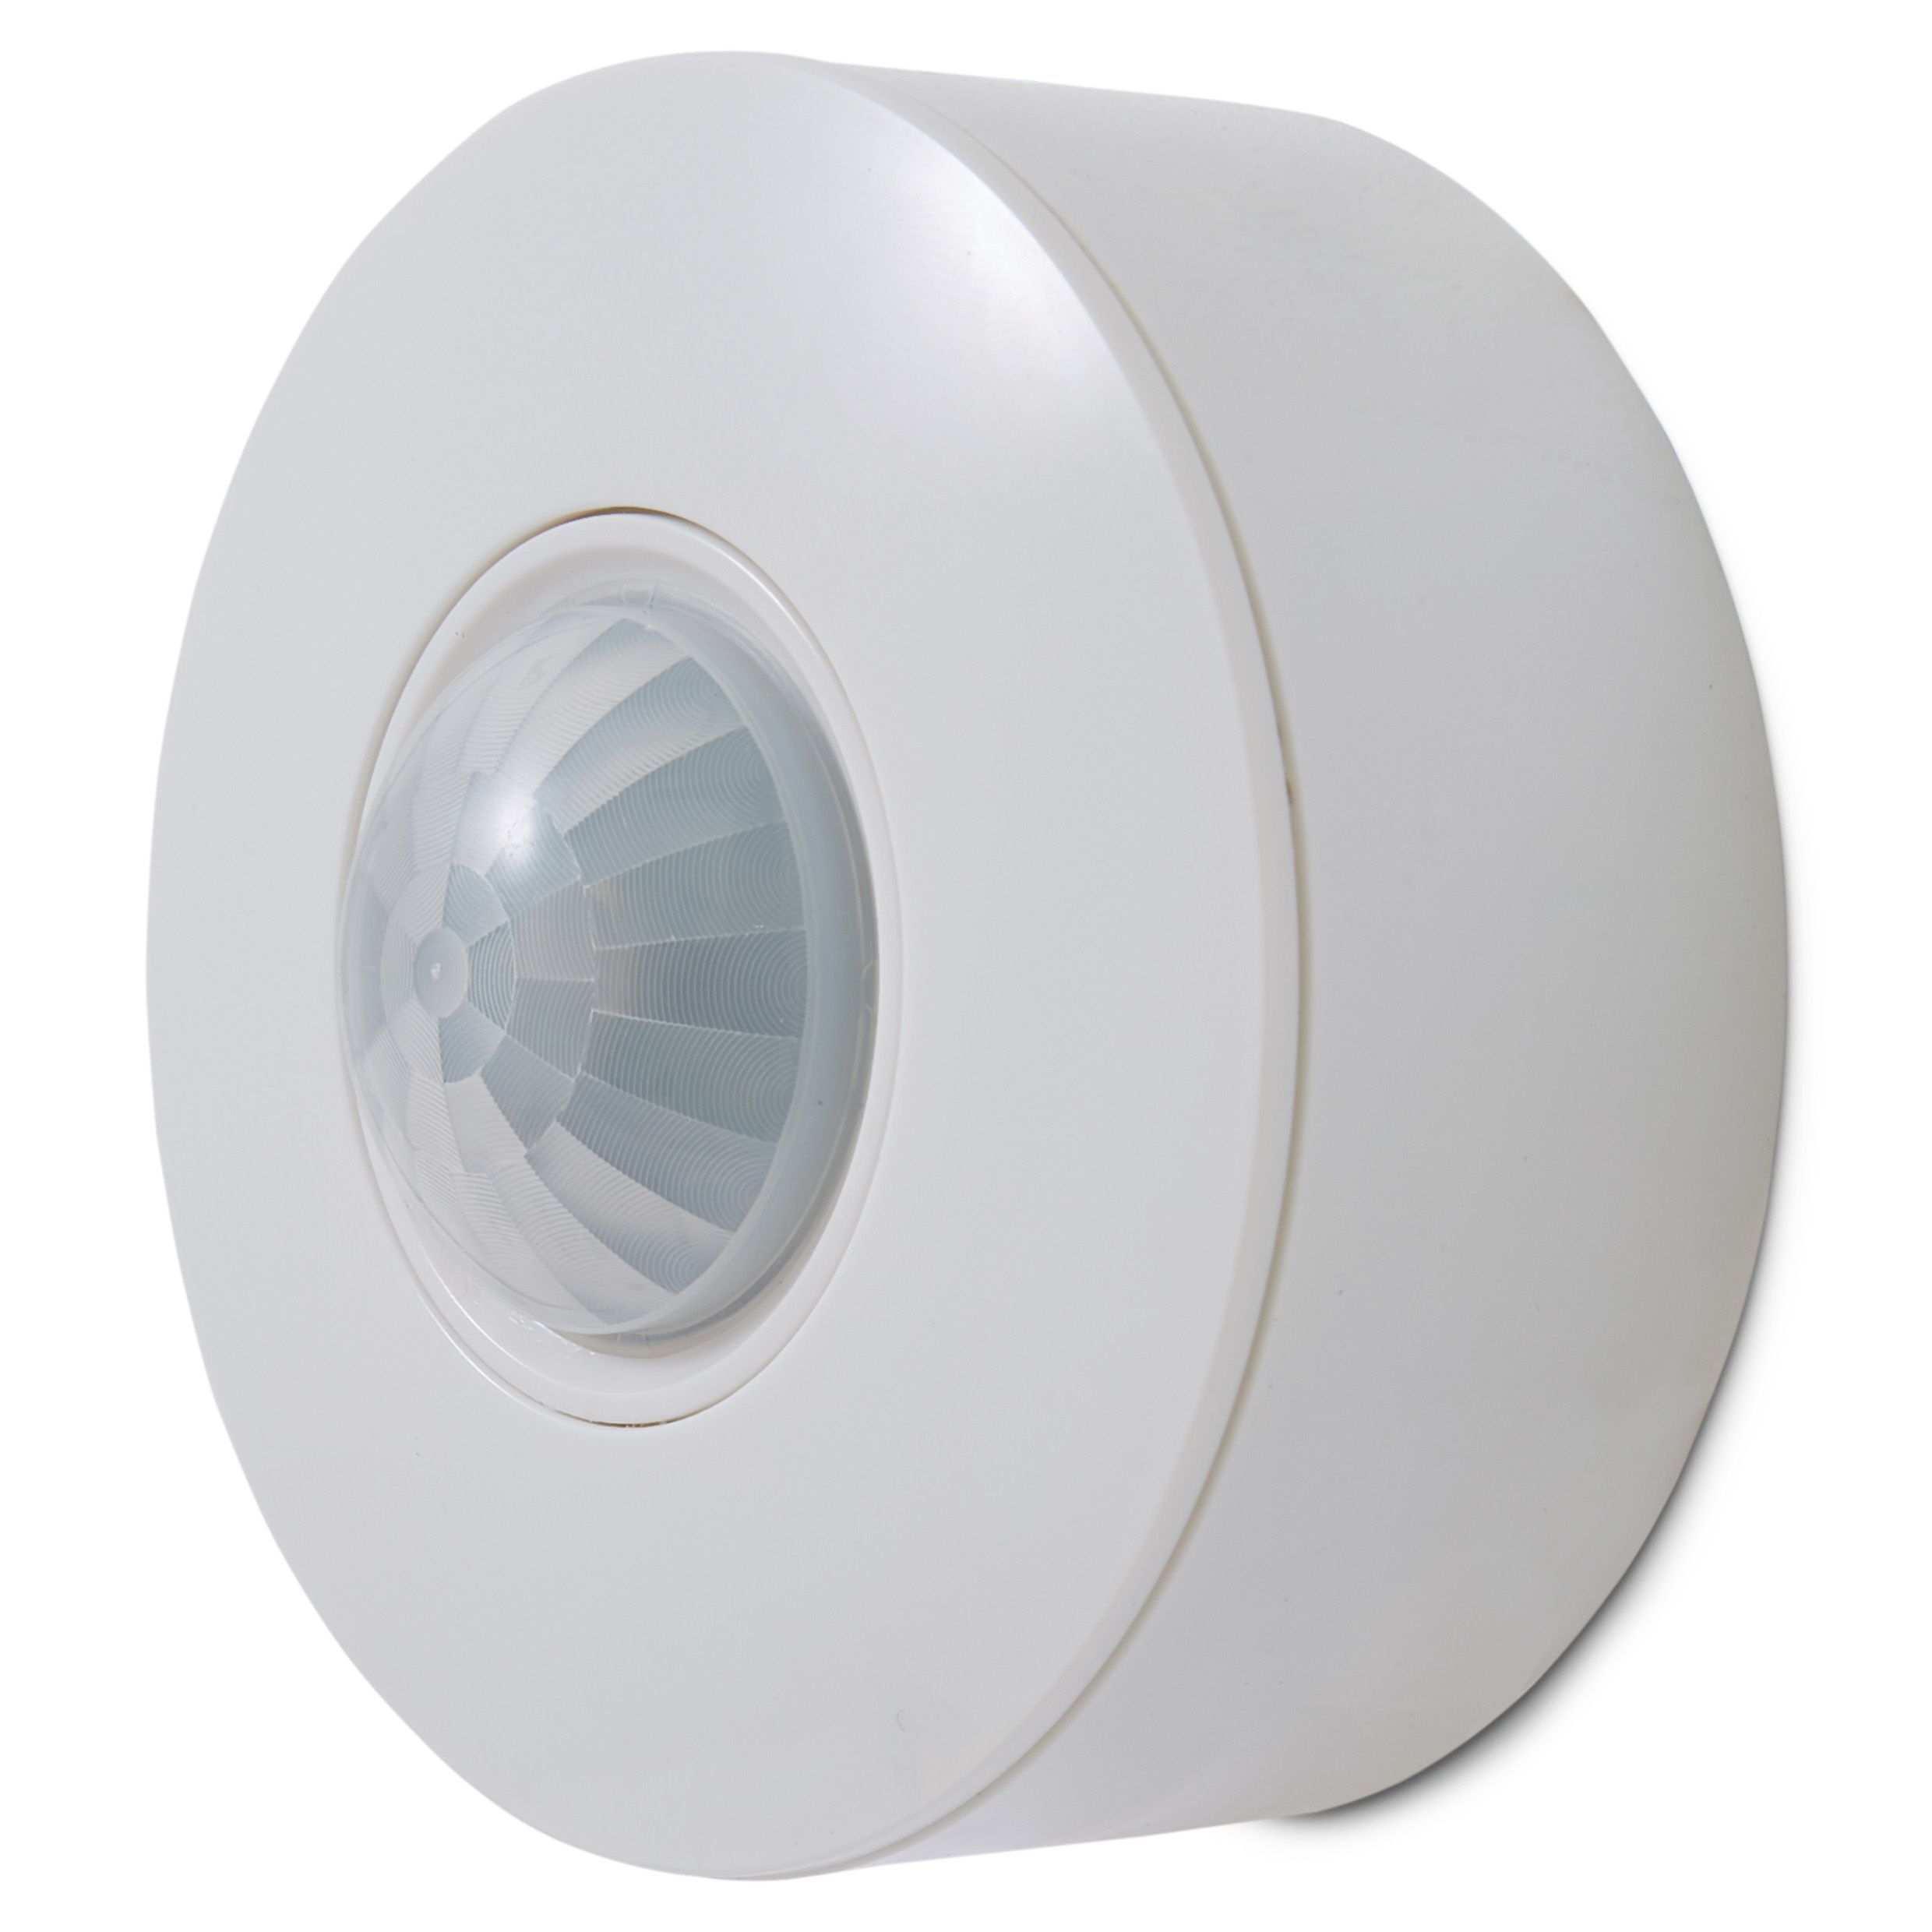 Colours Driggs Mains-powered White LED Strip light starter kit